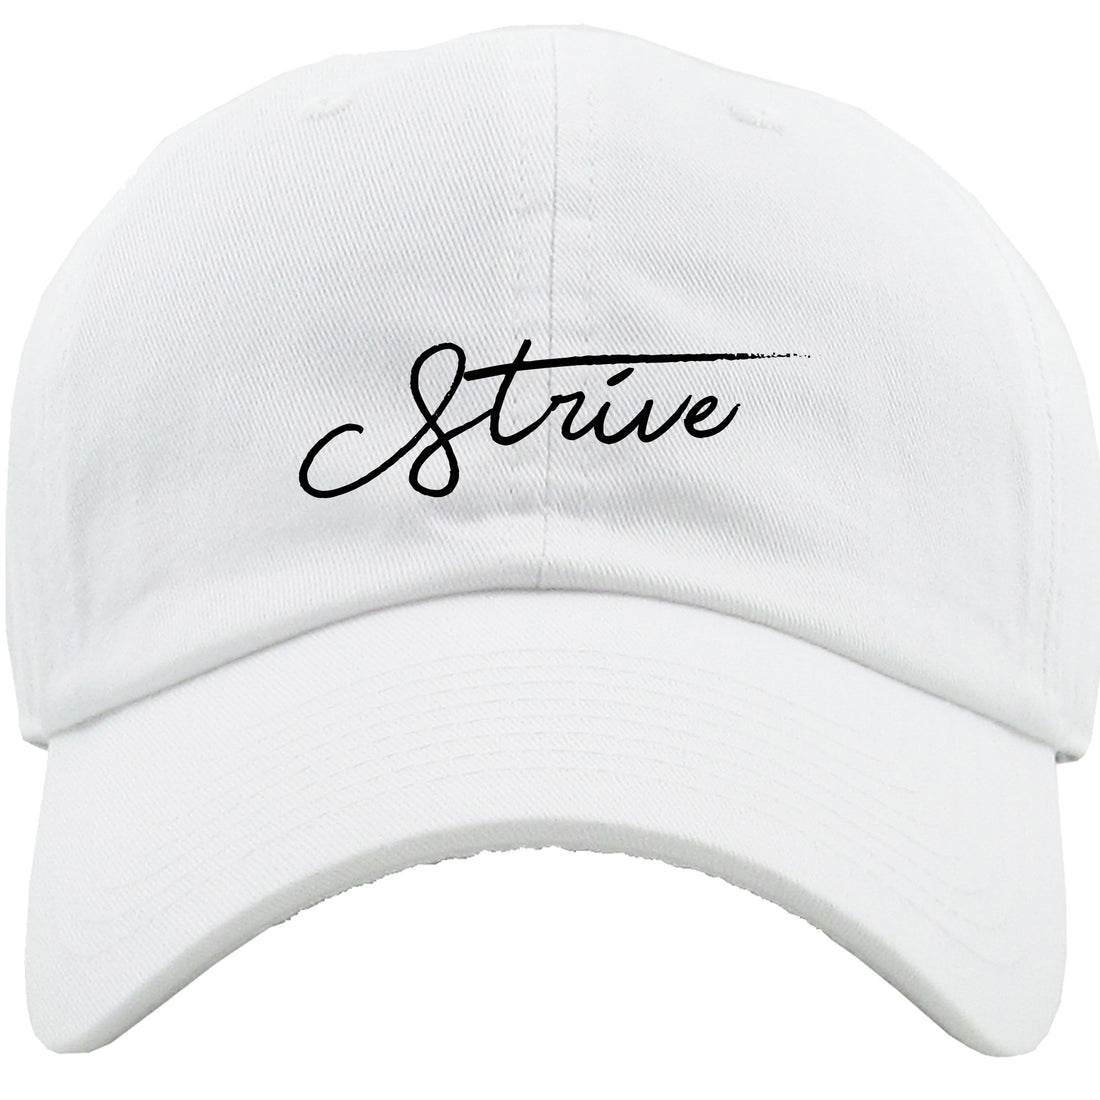 STEM "Strive" Dad Hat - STEM Clothing Group